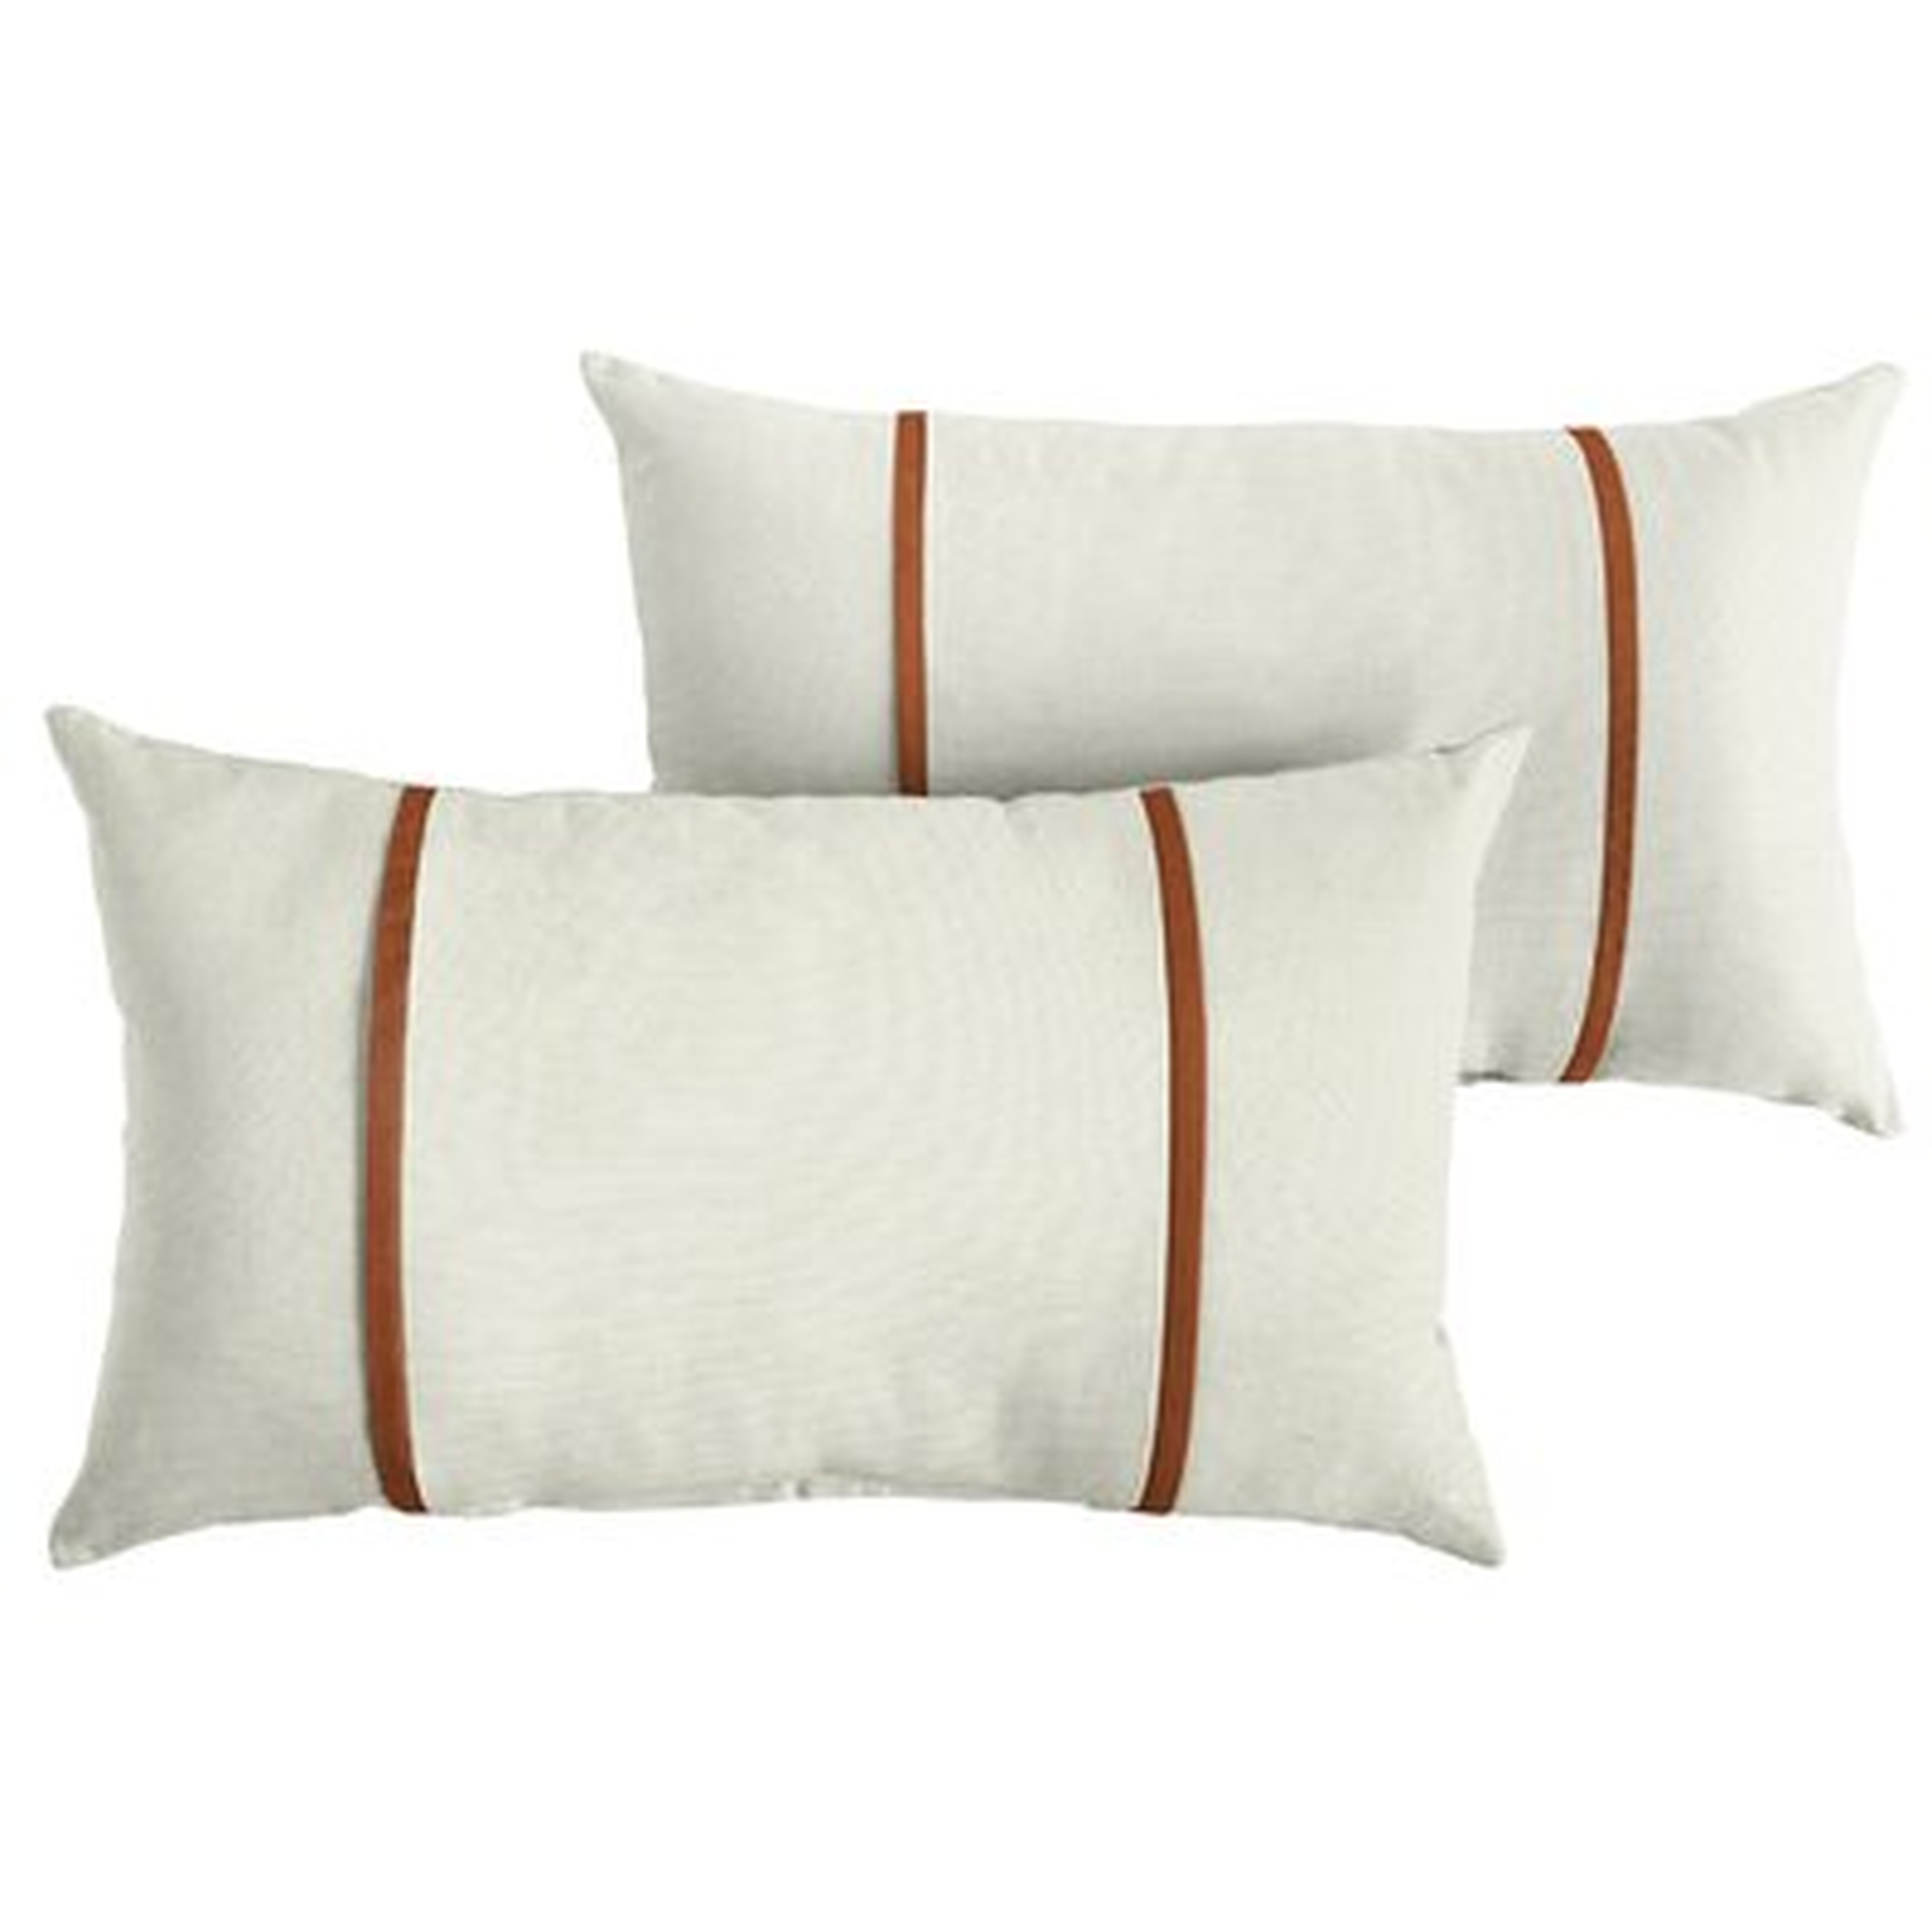 Furston Outdoor Rectangular Pillow Cover & Insert - Birch Lane